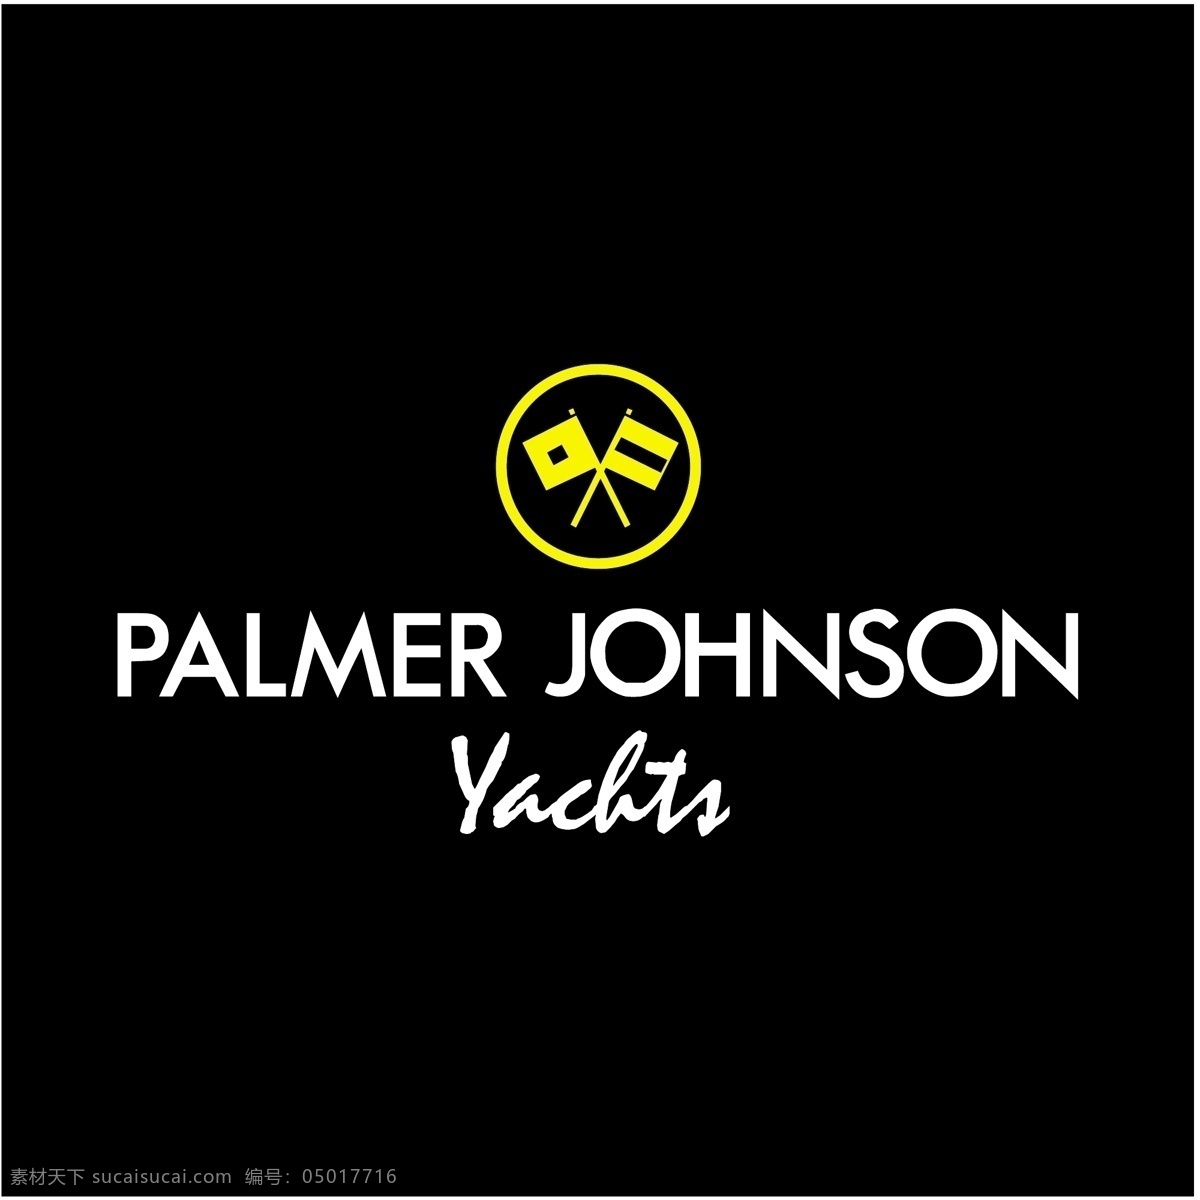 帕约翰逊游艇 帕尔默帕尔默 约翰逊 约翰逊的游艇 游艇 矢量 自由 约翰逊约翰逊 标志 表达 载体 表达载体 载体约翰逊 约翰逊艾 黑色